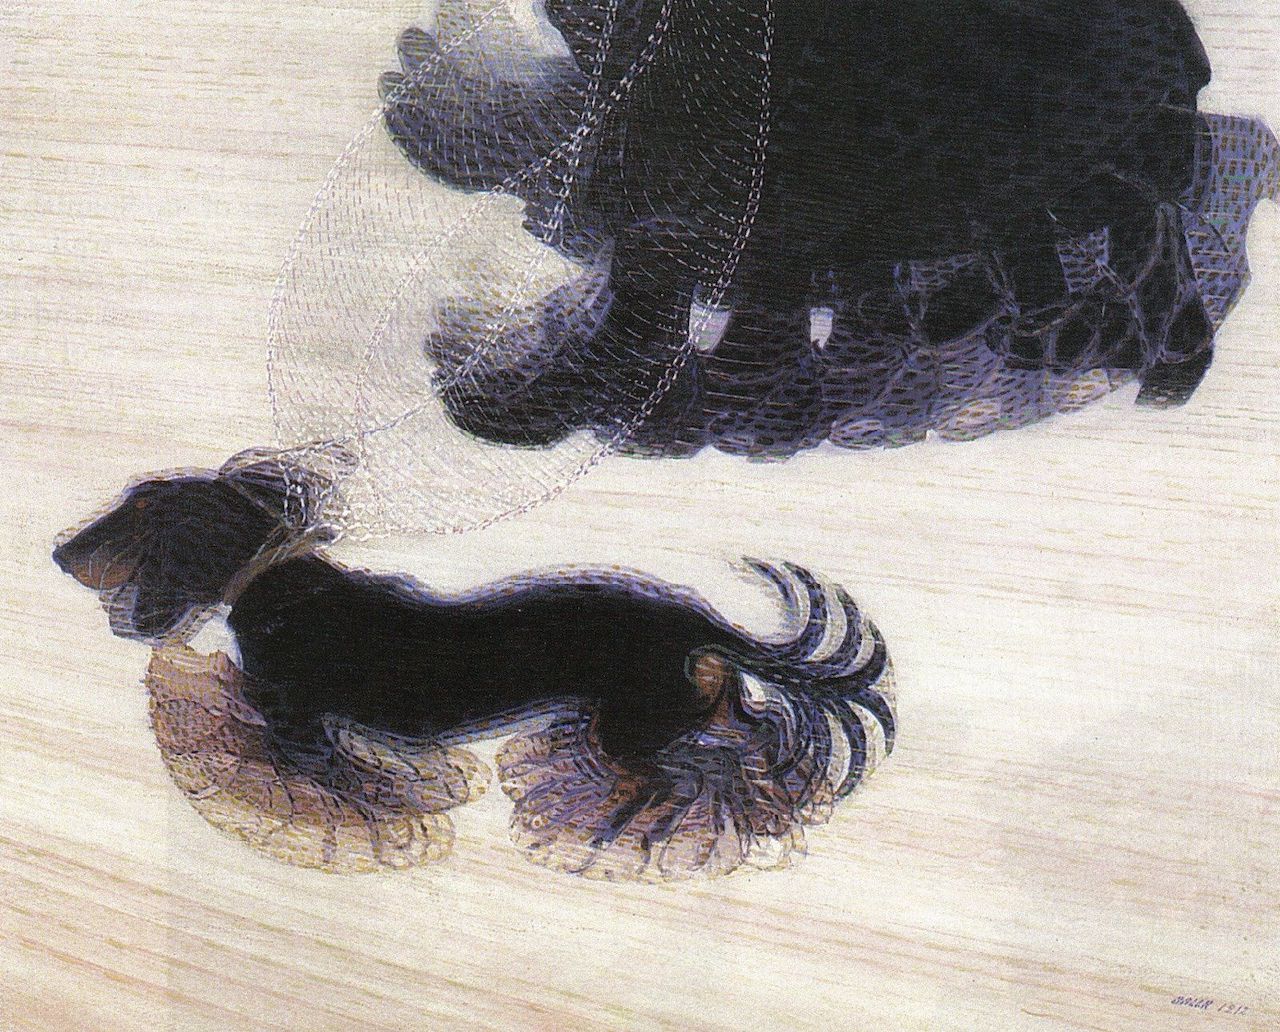 Giacomo Balla. Die Bewegung des Hundes an der Leine. 1912. Öl / Leinwand. 90 x 110cm. By Giacomo Balla - Albright–Knox Art Gallery, Public Domain, https://en.wikipedia.org/w/index.php?curid=57065167